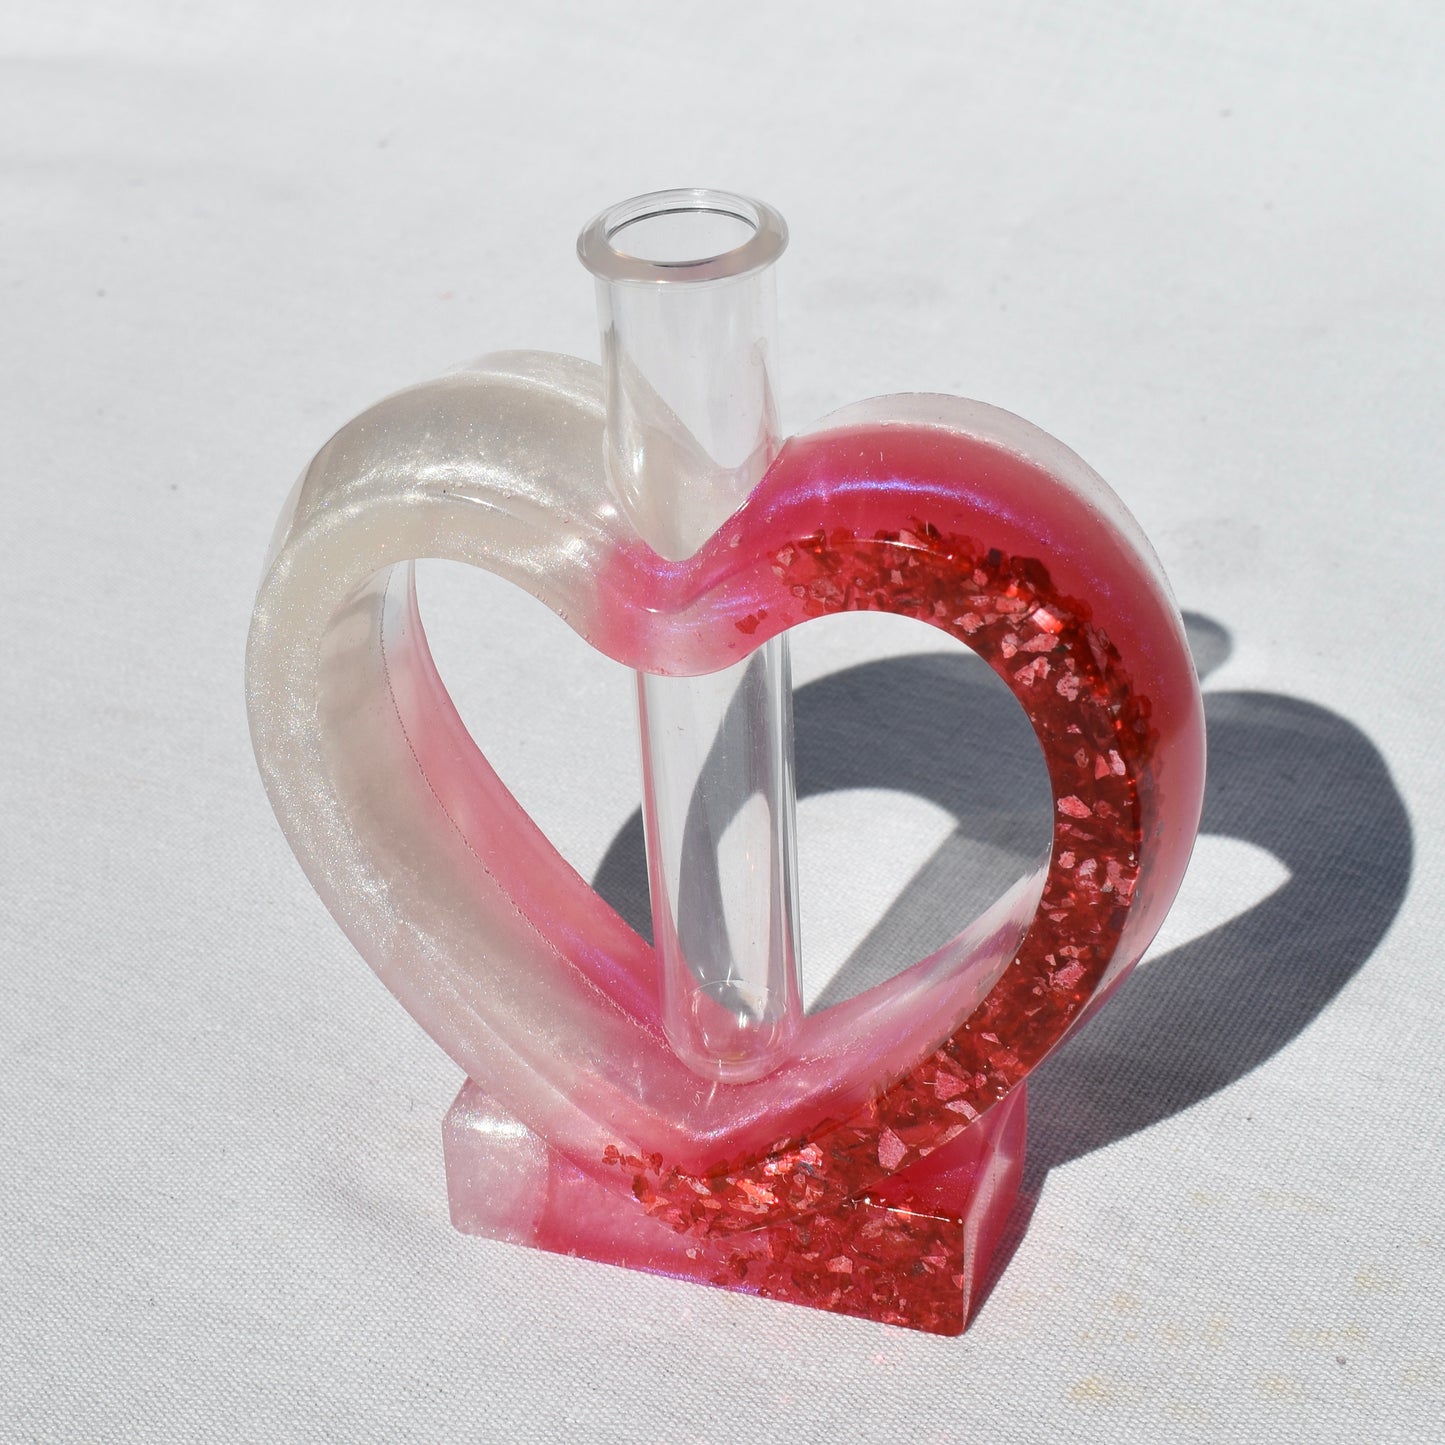 Heart Shaped Propagation Vase (2-piece set) • Hydroponic Plant Cutting Vase • Geometric Vase